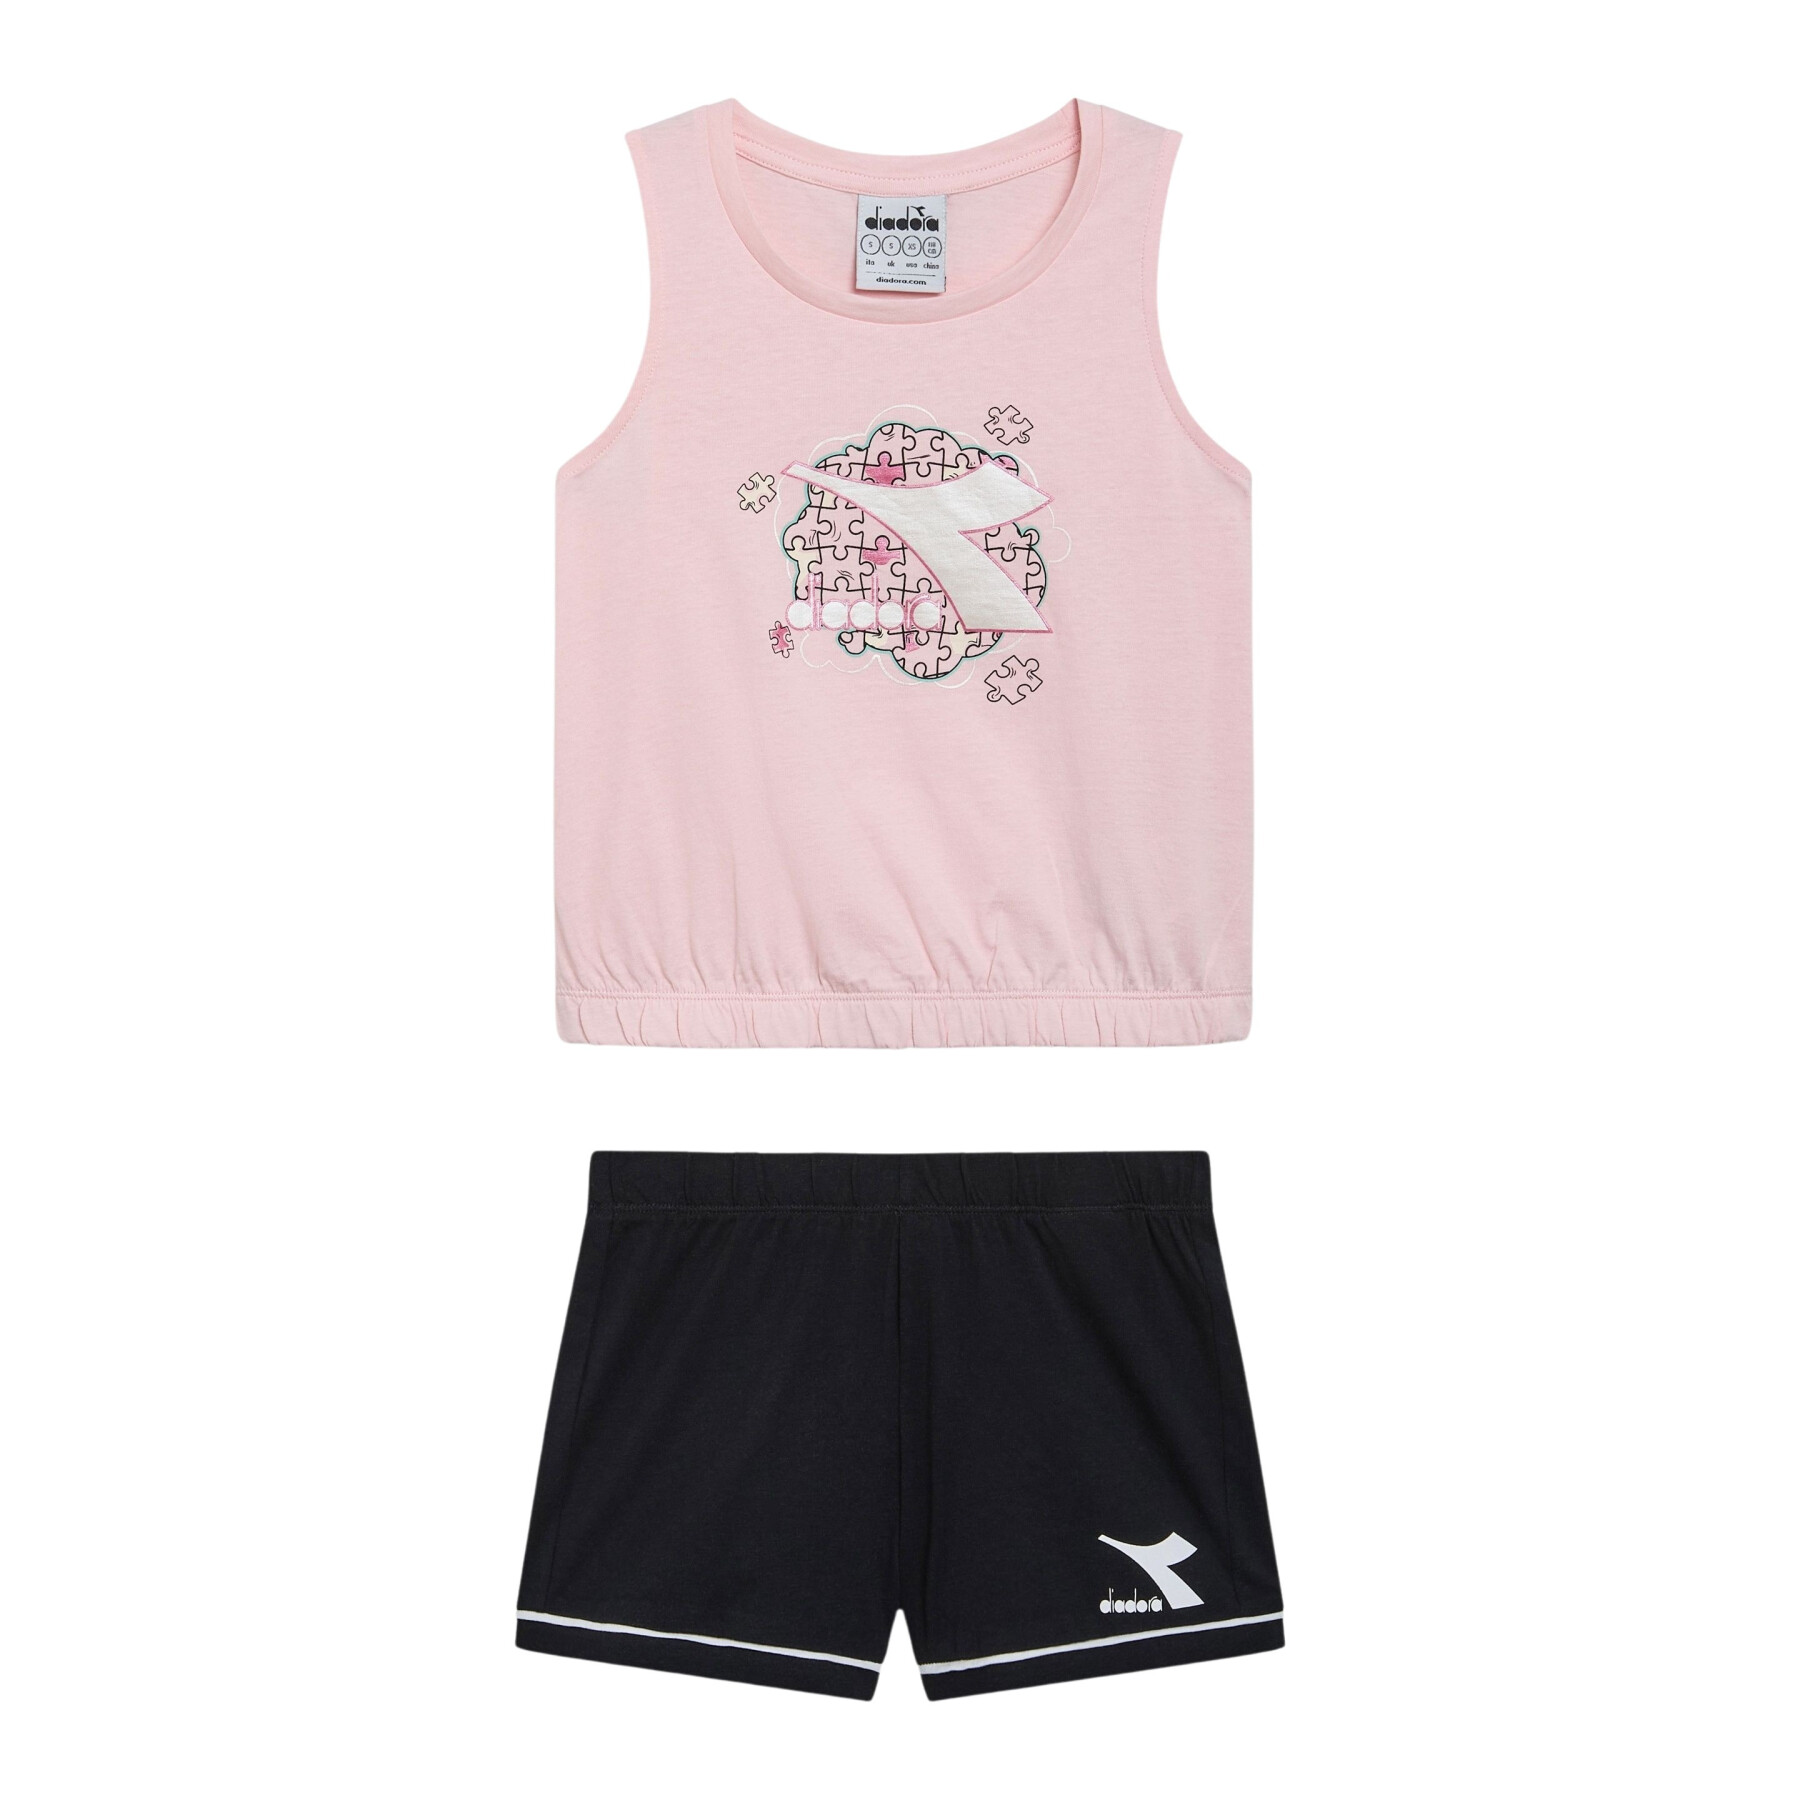 Girls' tank top and shorts set Diadora Puzzles